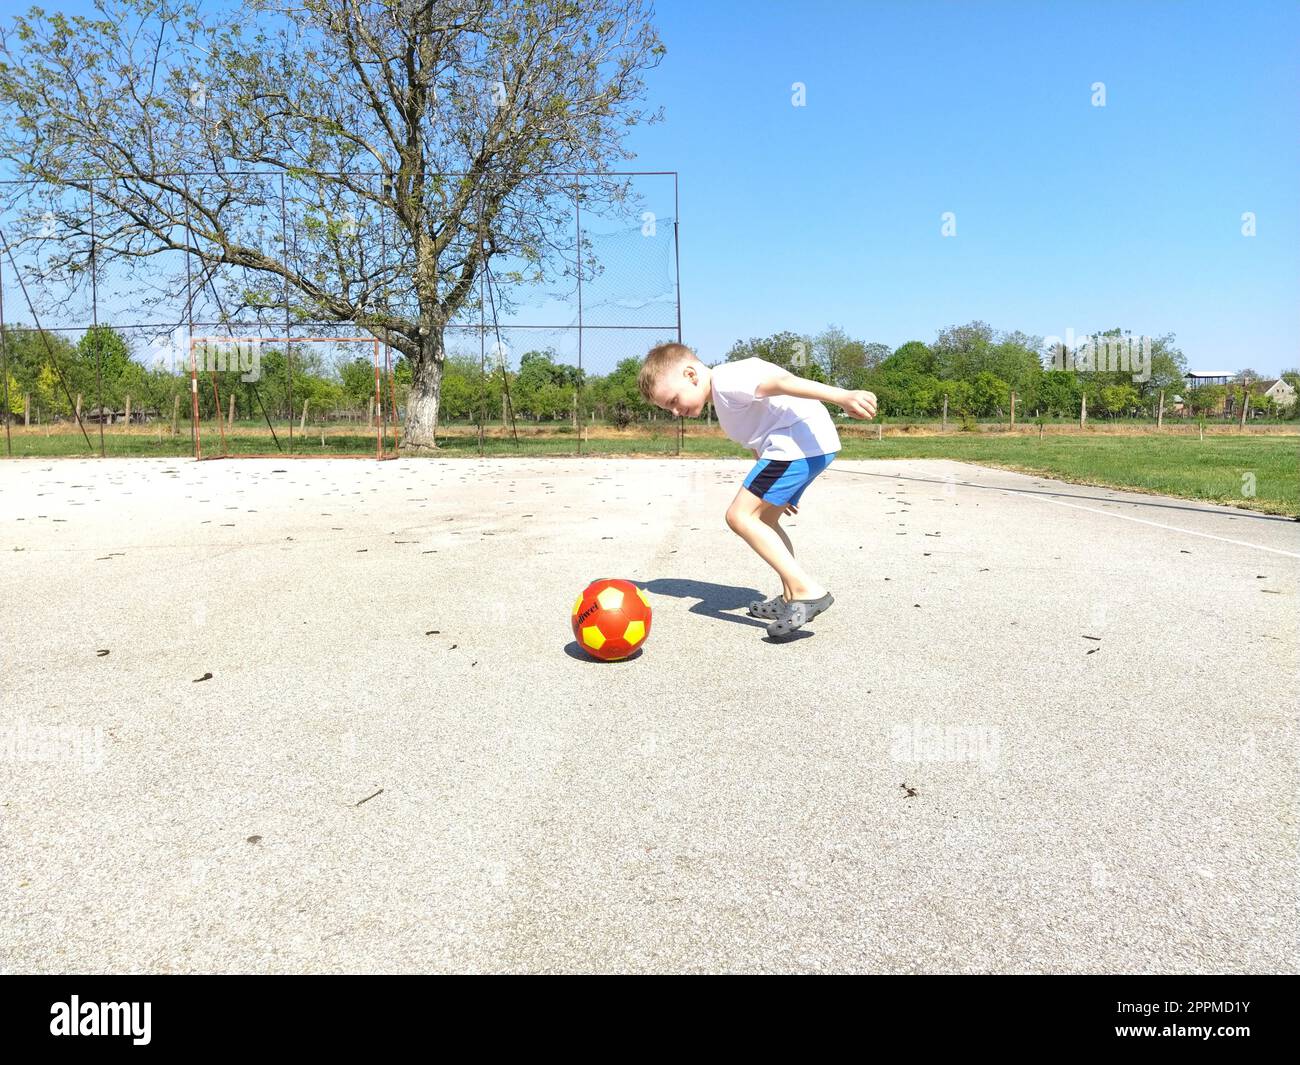 Sremska Mitrovica, Serbien. 6. Juni 2020. Ein Junge spielt Ball auf dem Spielplatz. Asphaltsportplatz. Ein Kind in einem weißen T-Shirt. Kleinkind mit blondem Haar, 7 Jahre alt. Laufen, Treten und Übungen Stockfoto